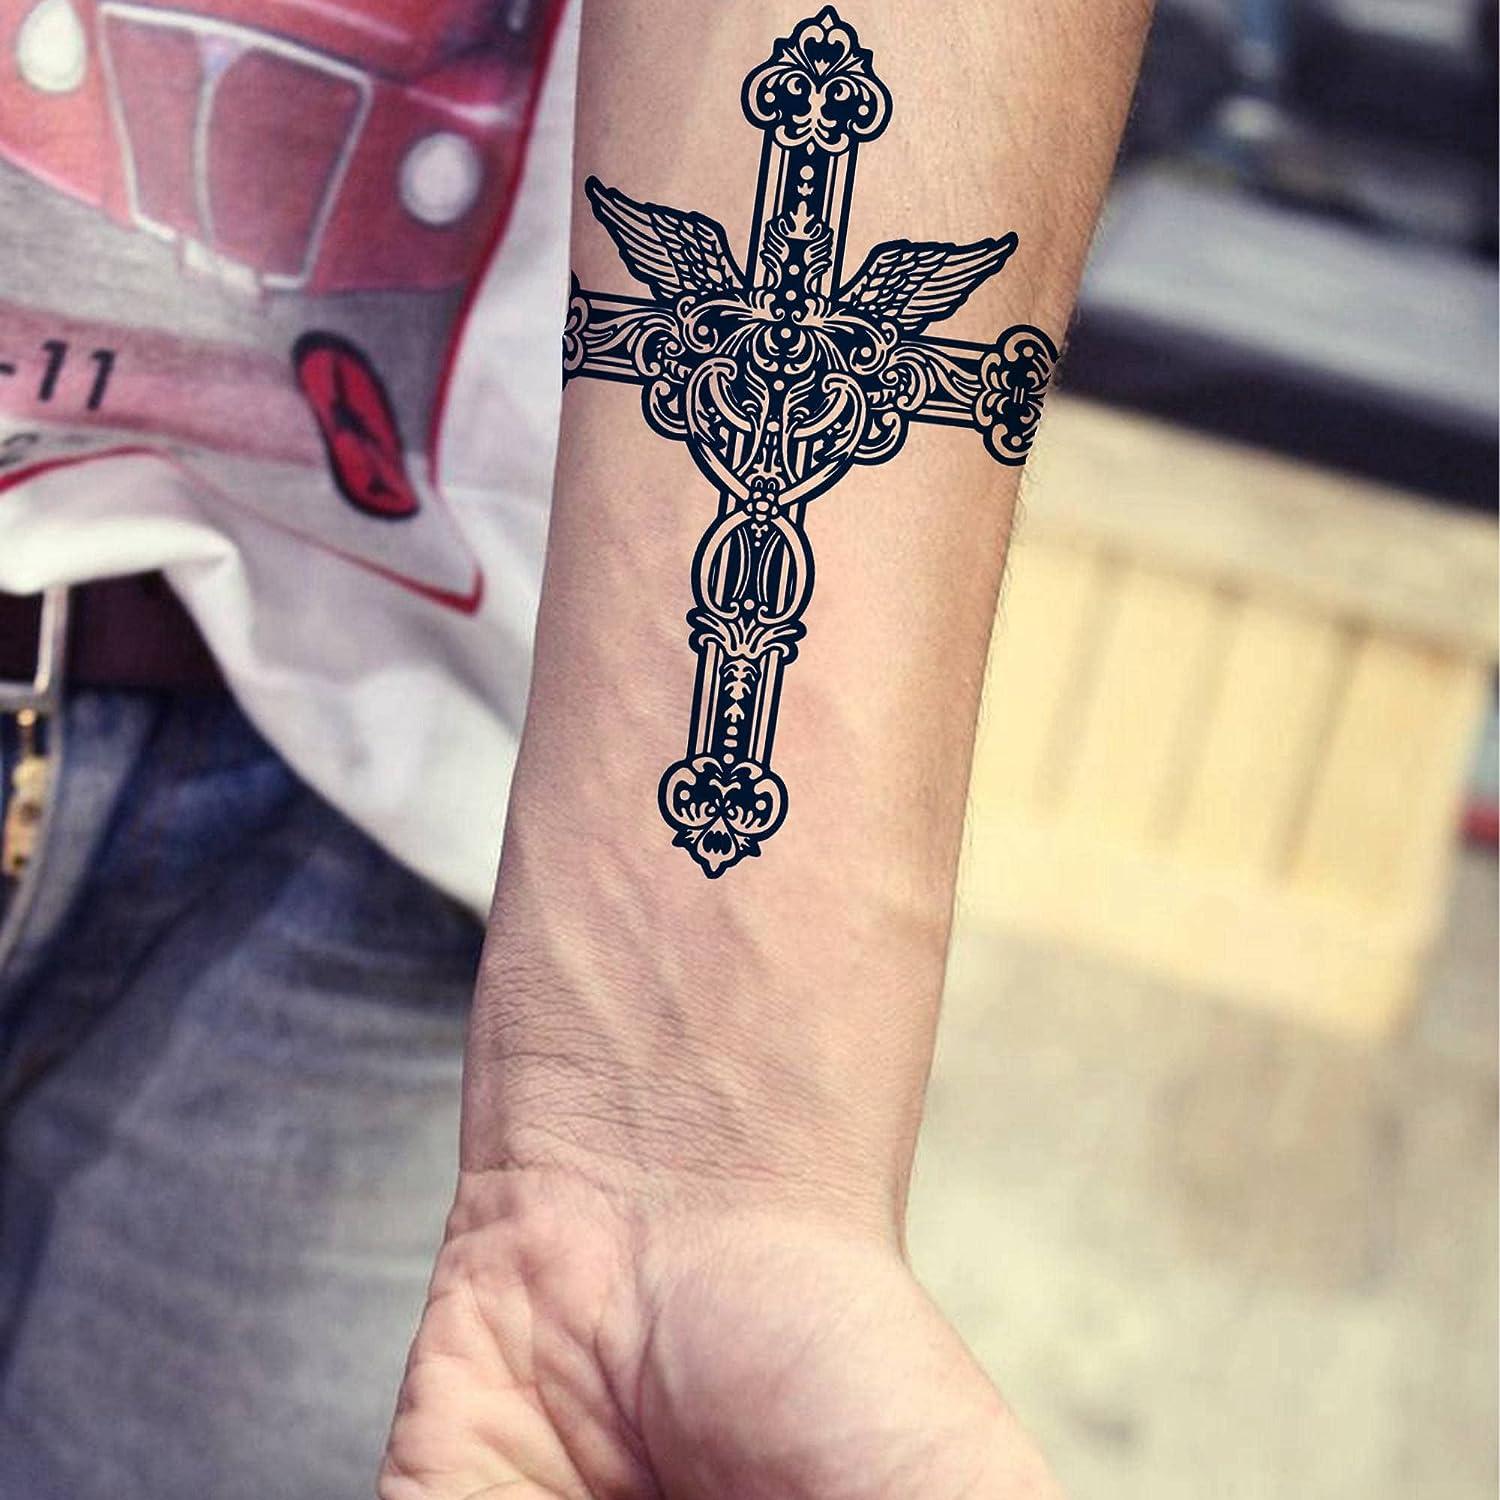 Free Cross Tattoo Designs | Cross tattoo designs, Small cross tattoos, Cross  tattoo